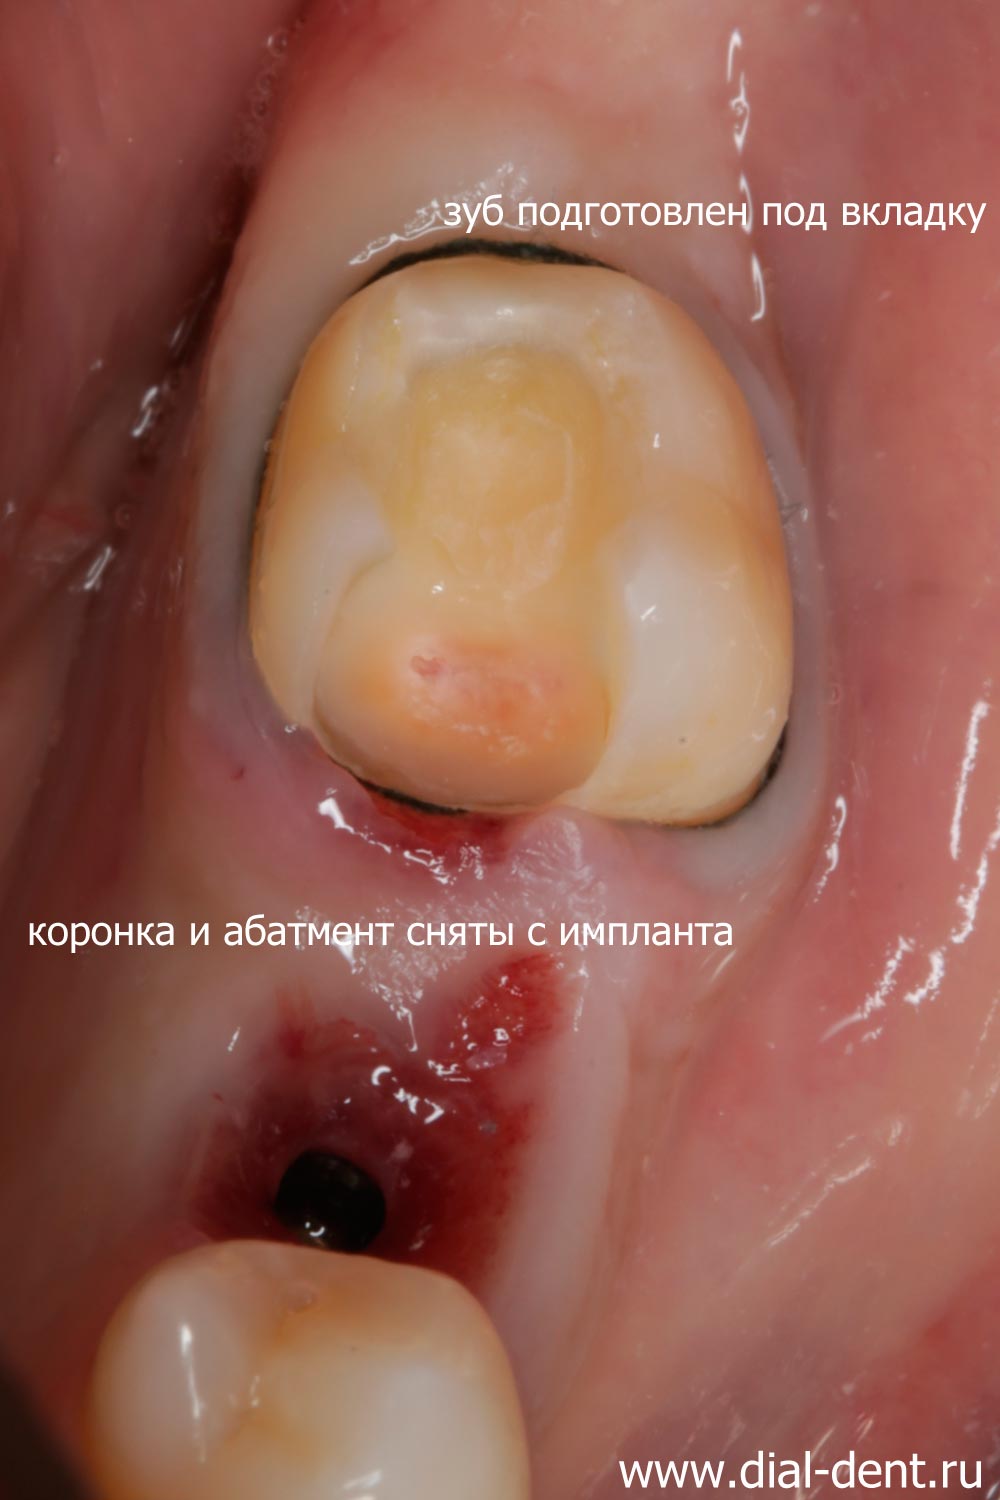 зуб подготовлен под вкладку, коронка с импланта отправлена на коррекцию